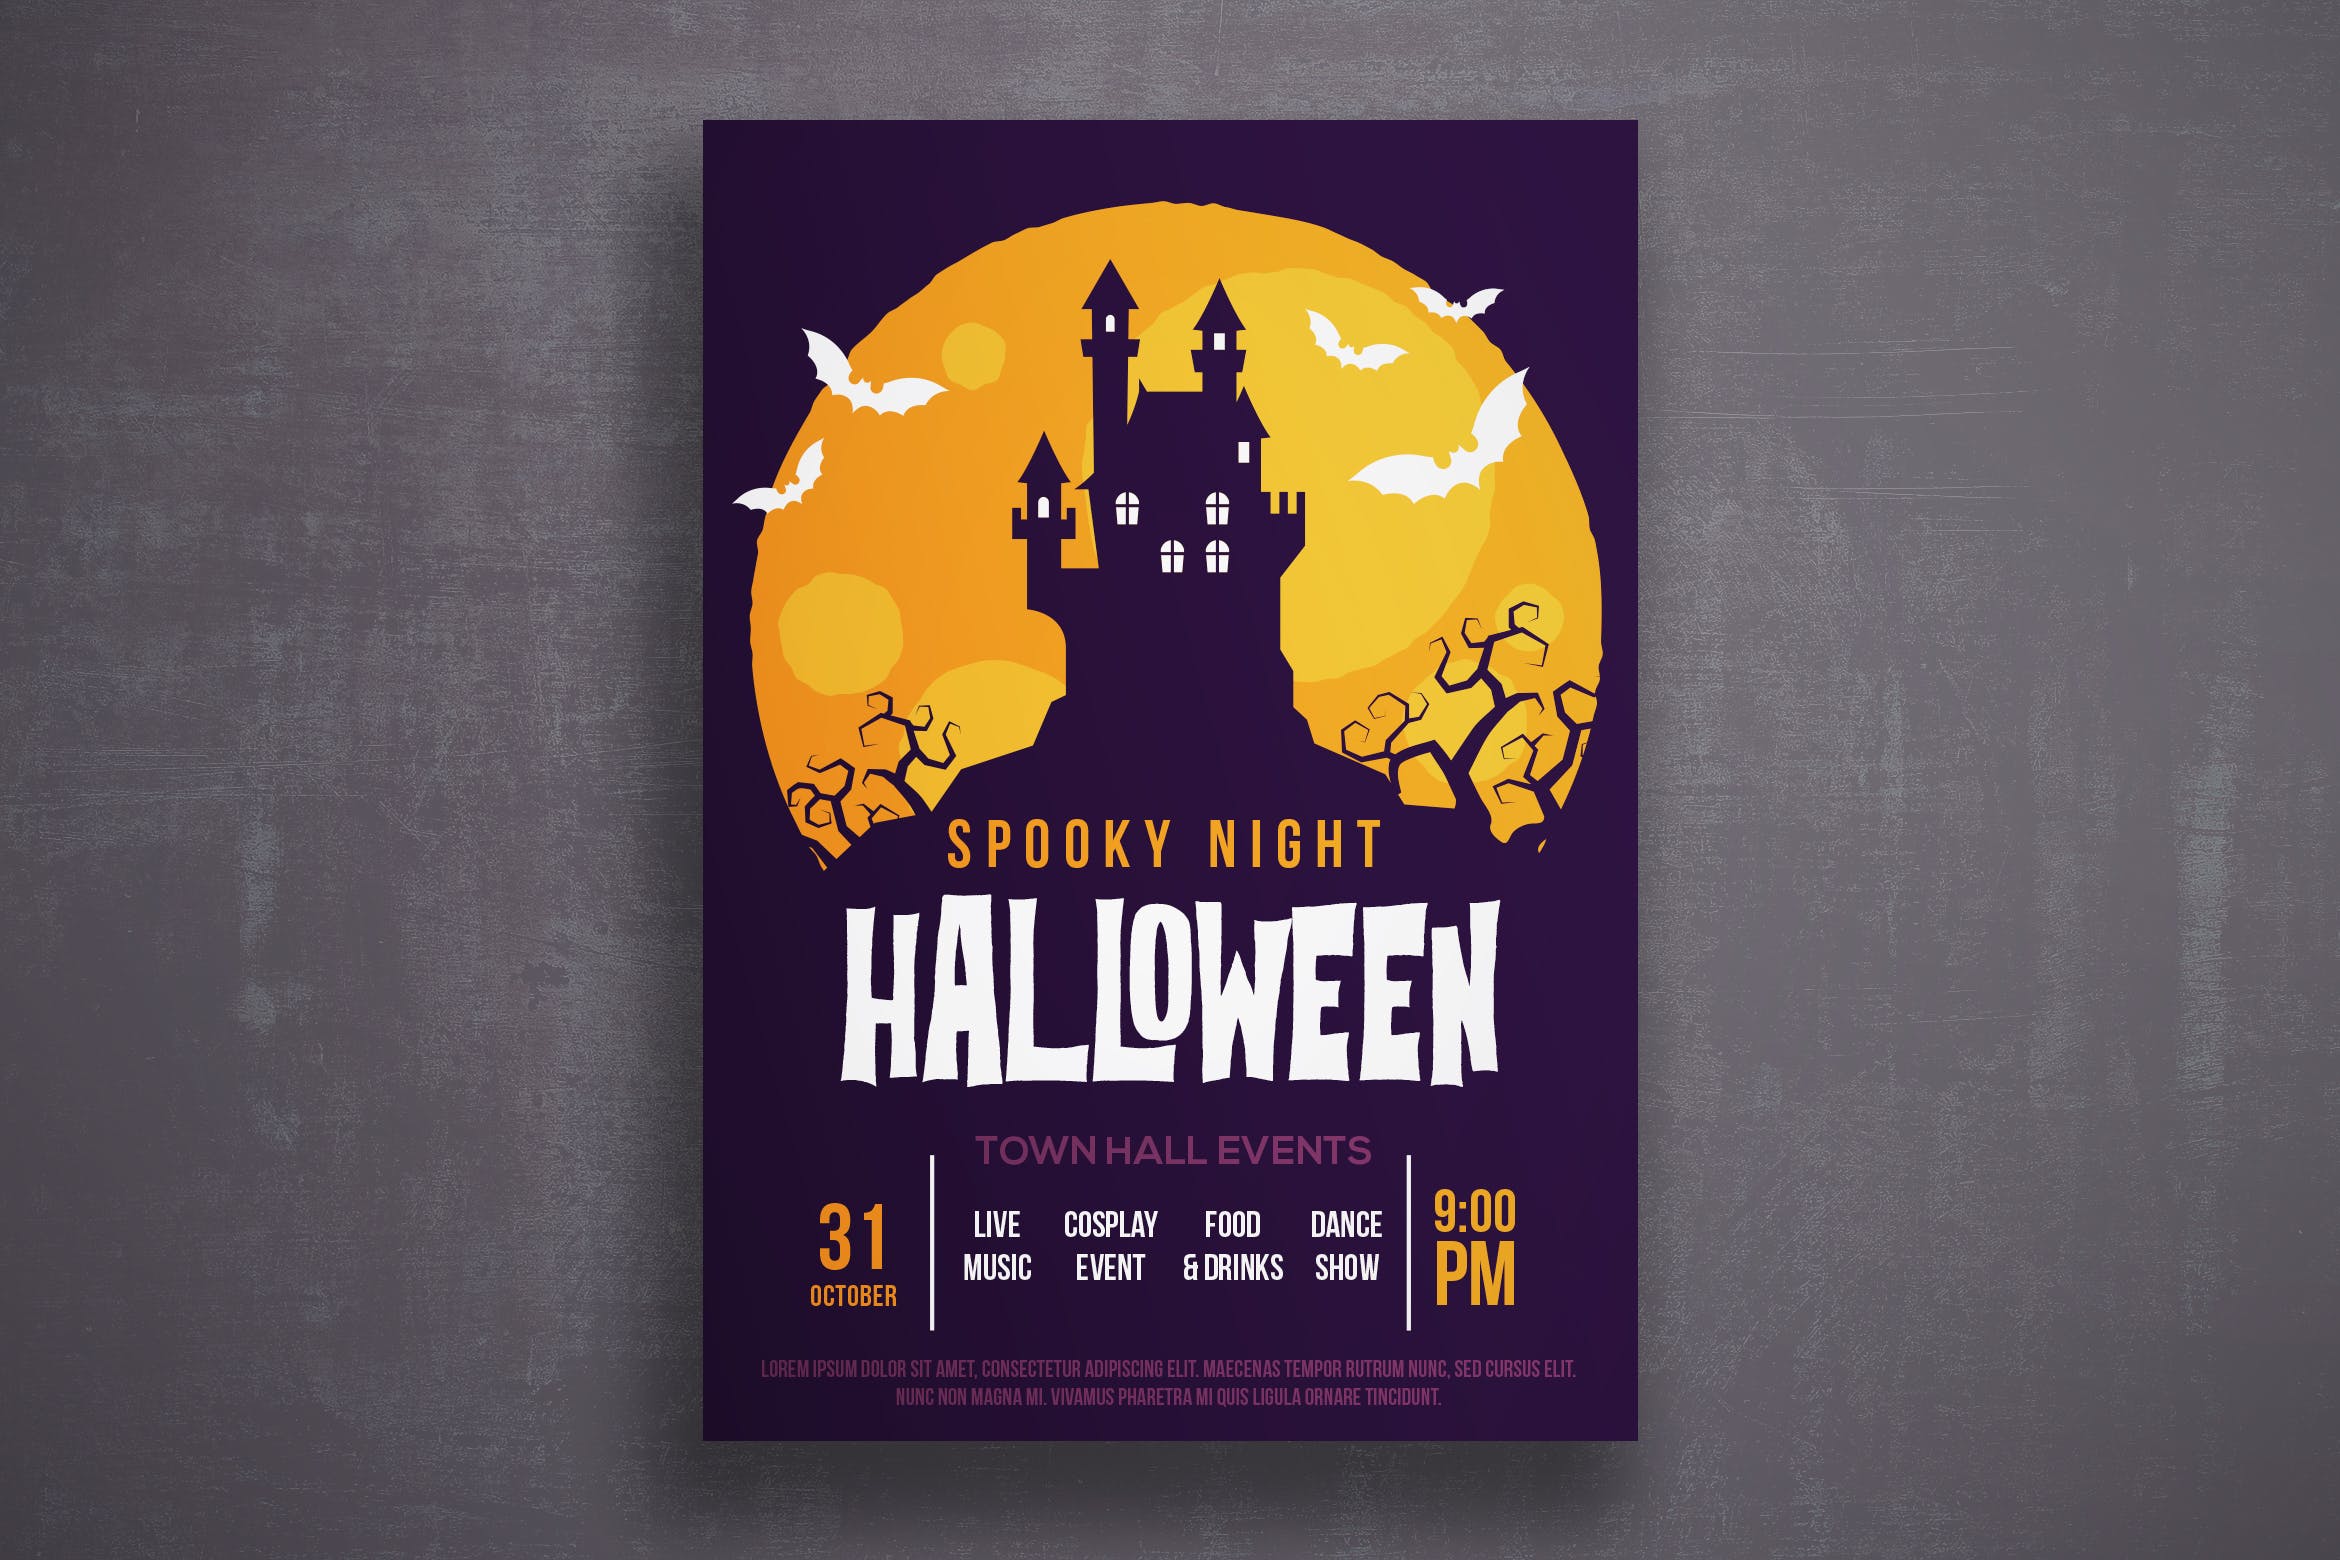 万圣节恐怖之夜活动邀请海报传单素材库精选PSD模板v1 Halloween flyer template插图